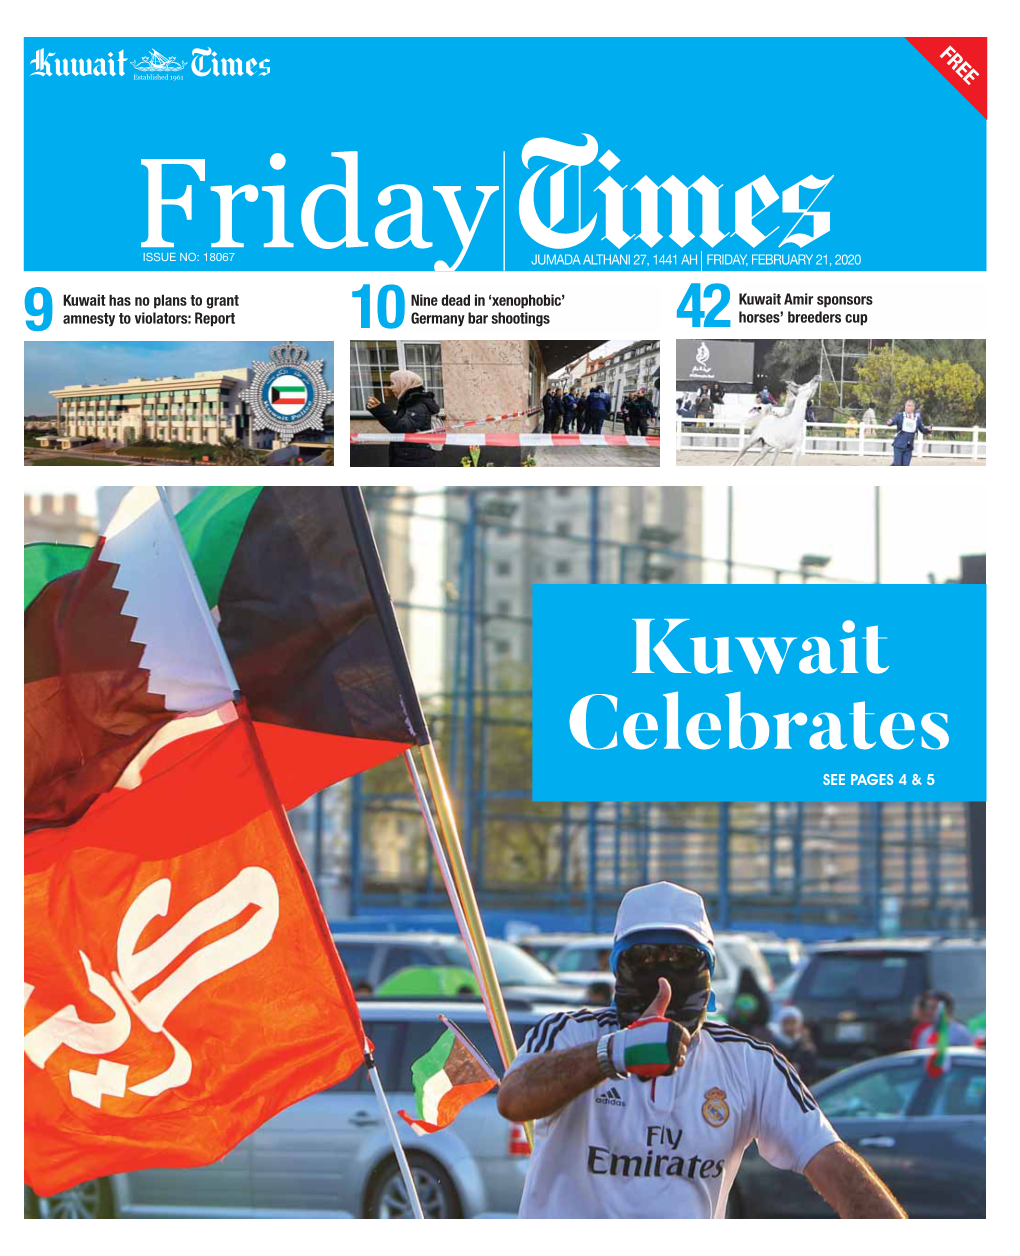 Kuwait Celebrates